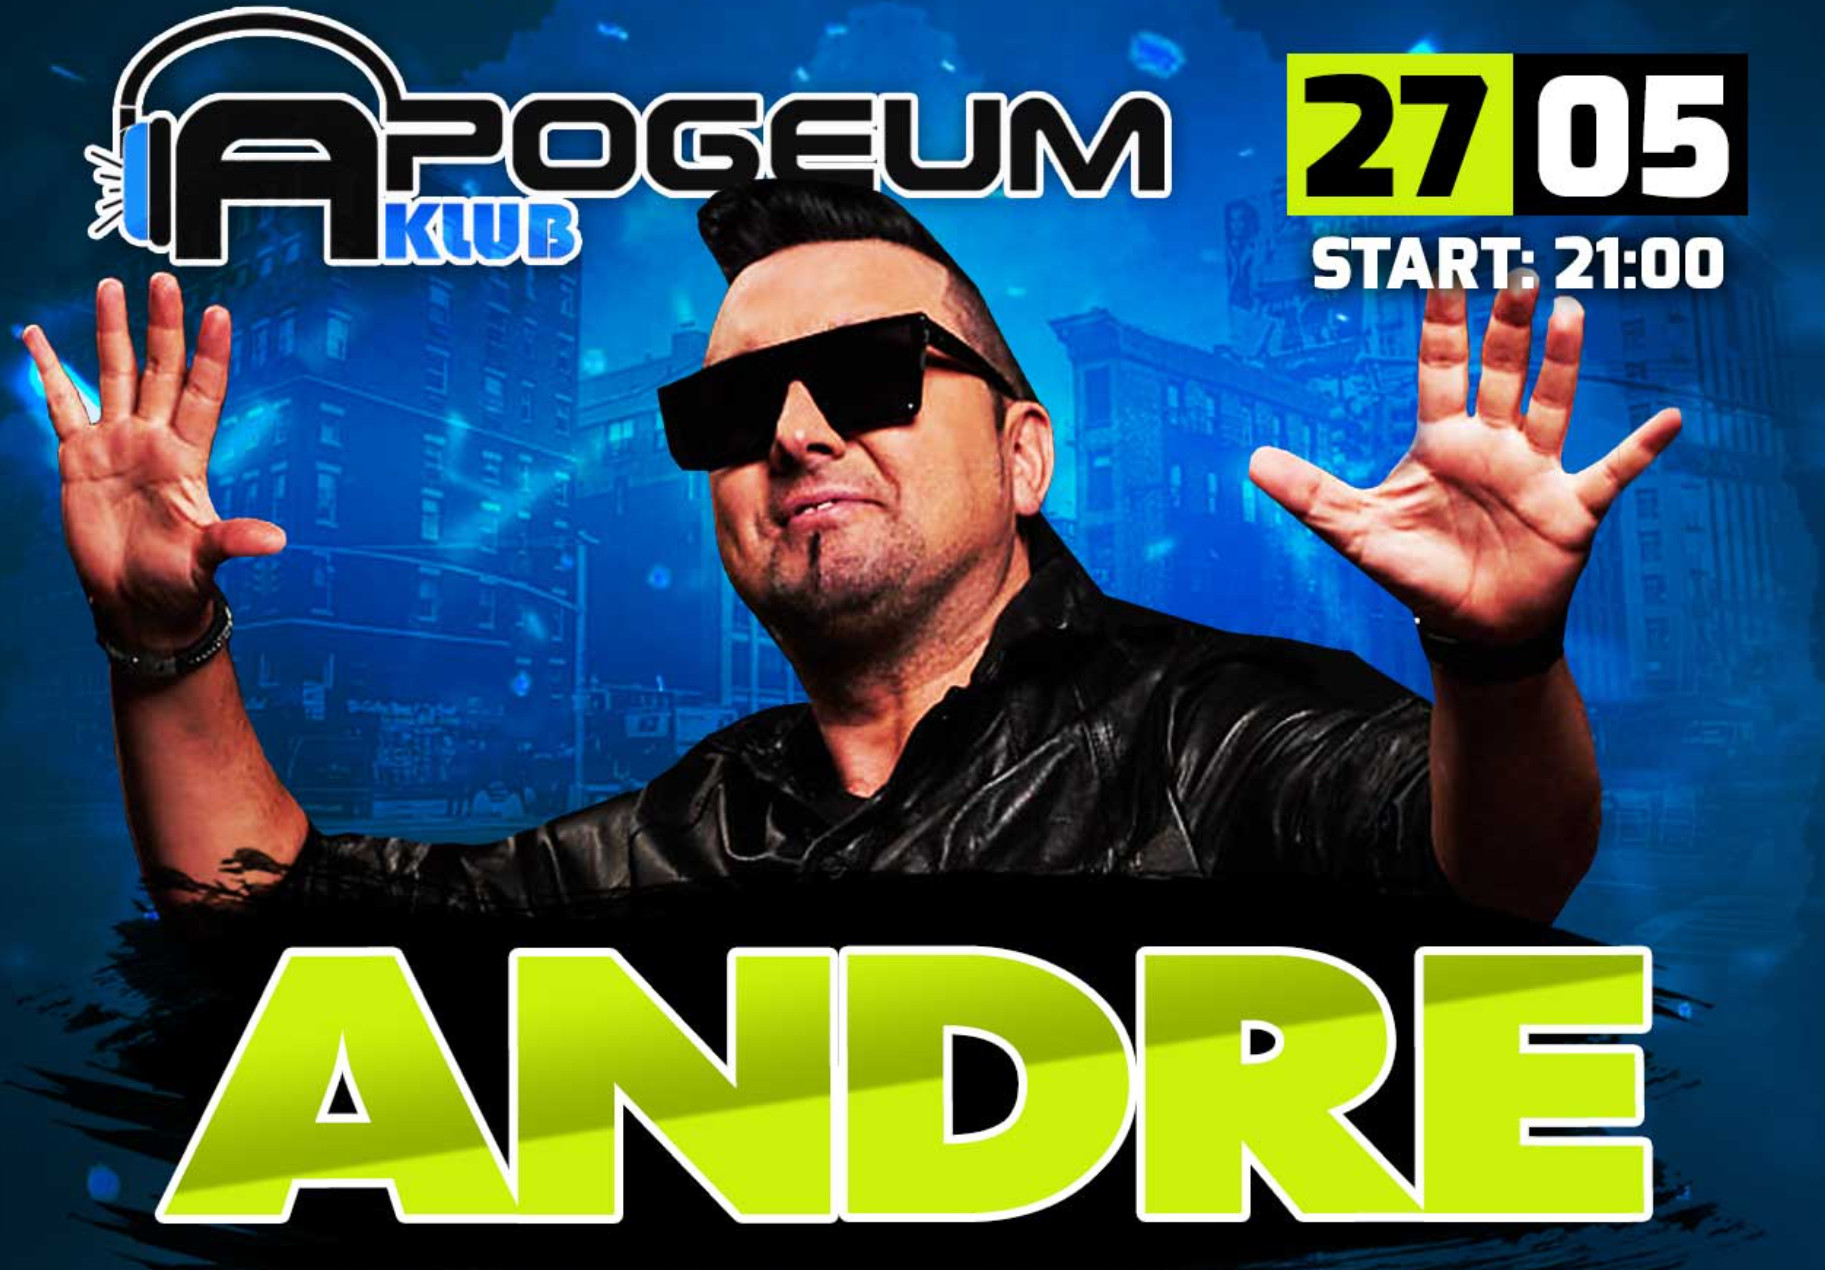 Andre wystąpi w klubie Apogeum! Już 27 maja! To będzie epicka impreza disco polo